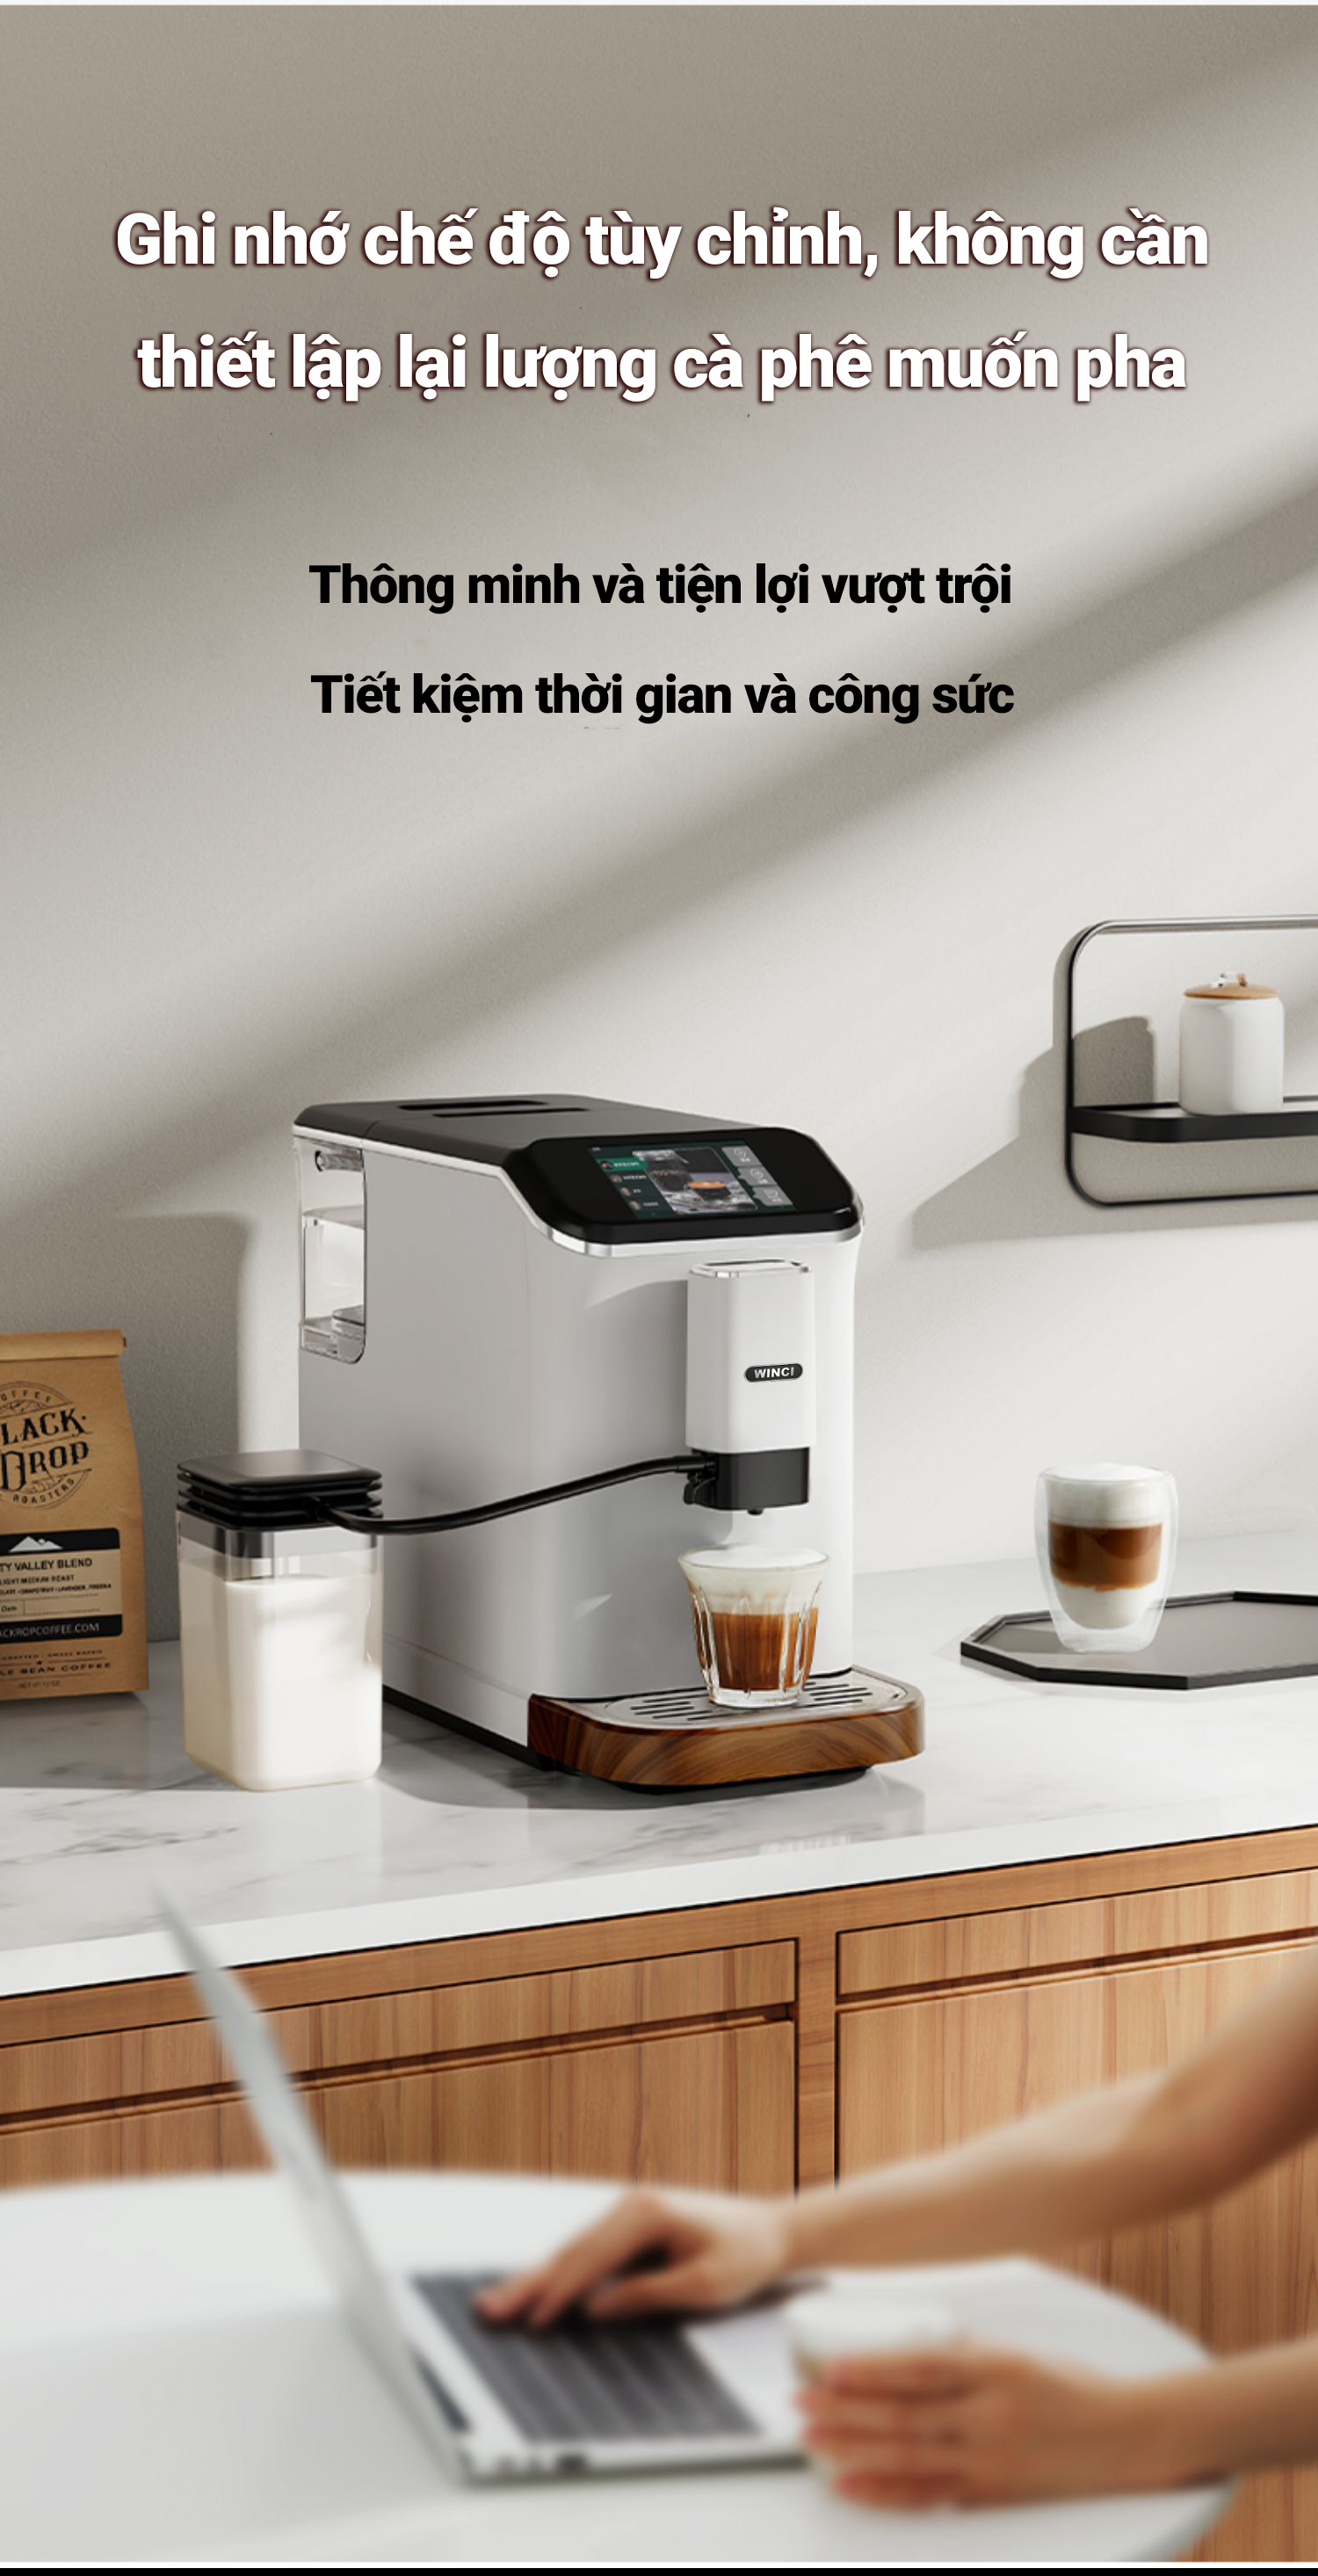  Tuỳ chỉnh chế độ pha cà phê dễ dàng với máy pha cà phê Winci EM64